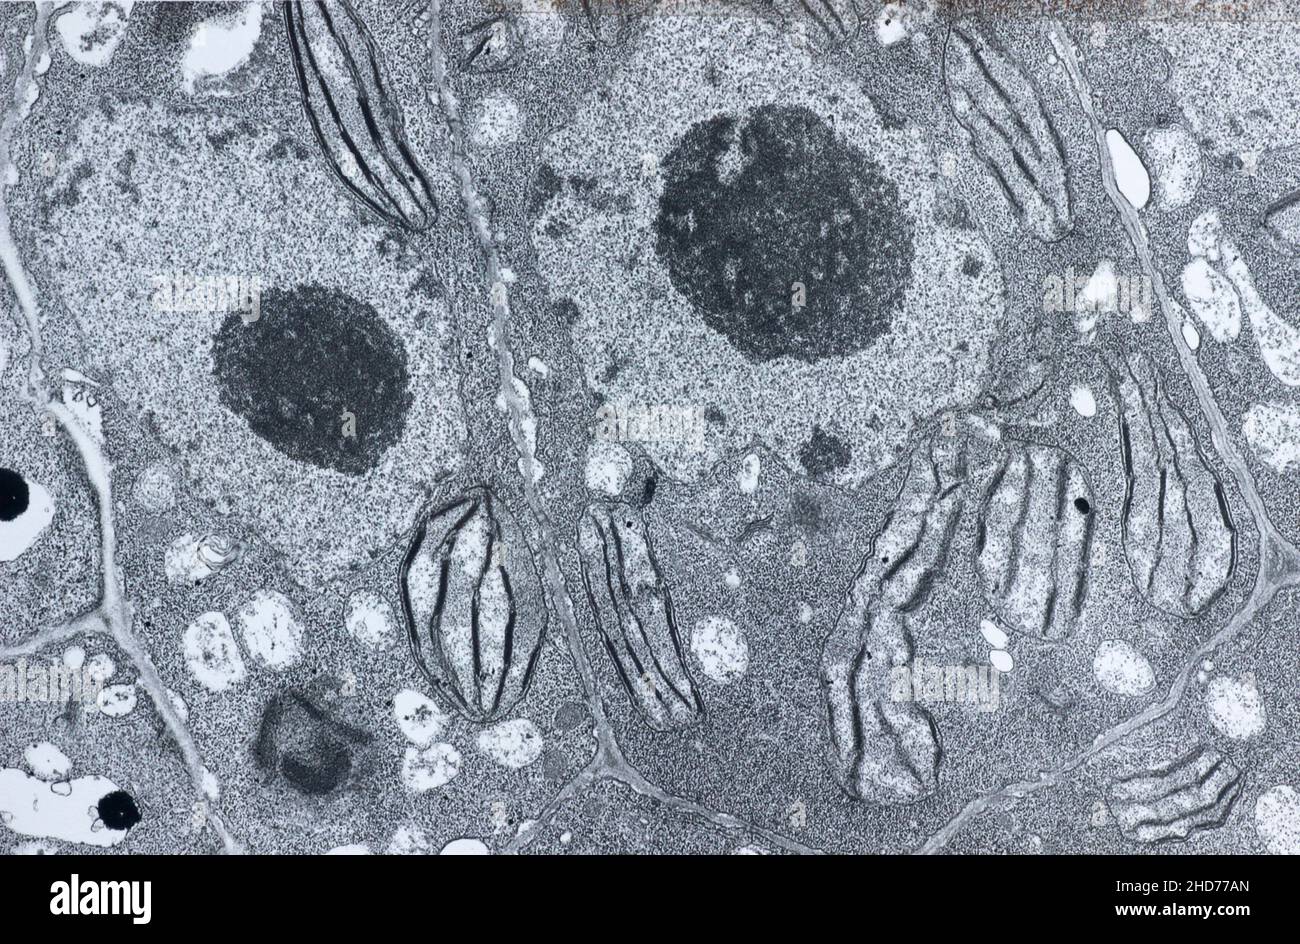 Elektronenmikroskopie einer vegetalen Zelle, die Chloroplast, Zellkern, Nukleol und Zellwände zeigt. Stockfoto